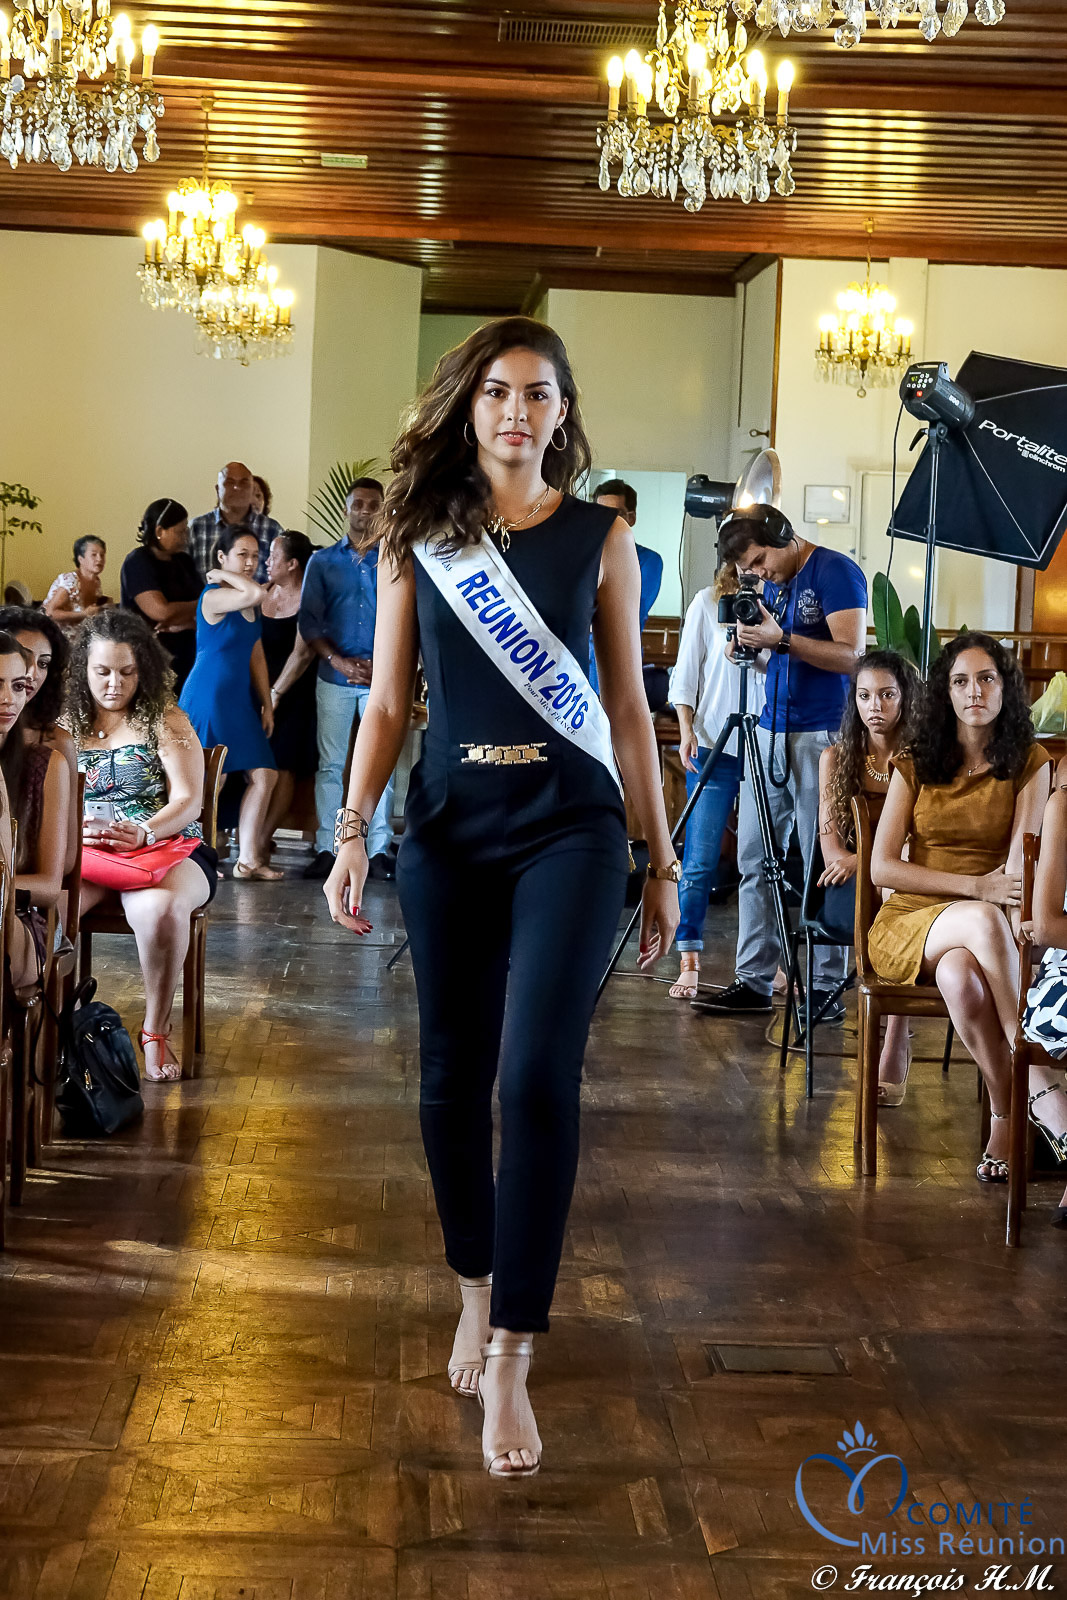 Ambre N'guyen, Miss Réunion 2016 et 5ème dauphine Miss France 2017, était là